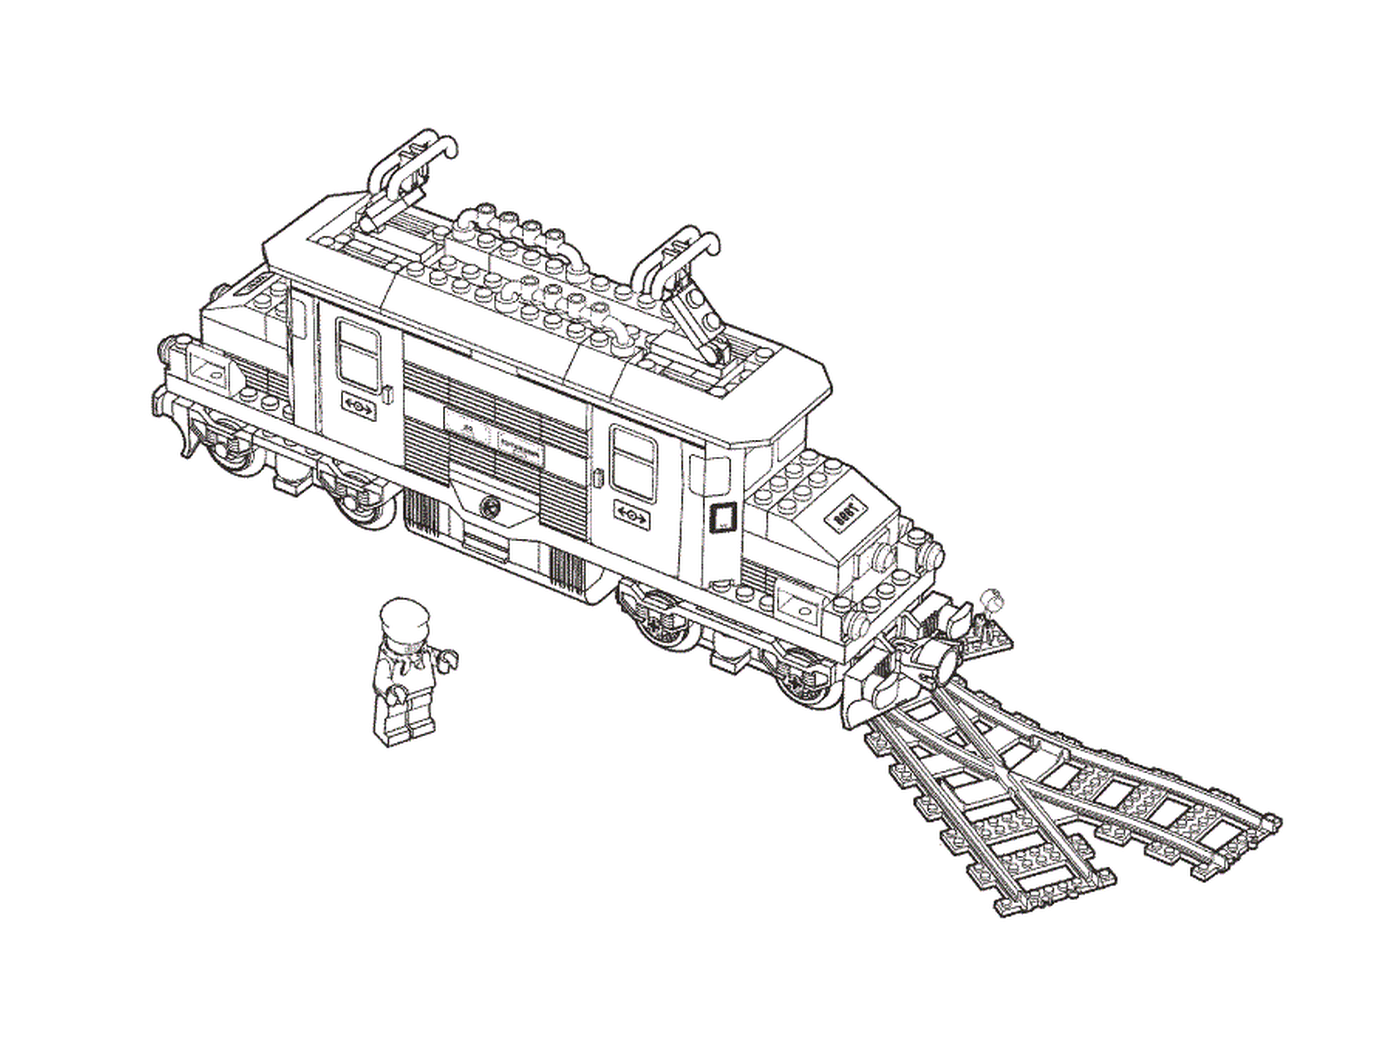  Dibujo de un tren de juguete Lego 